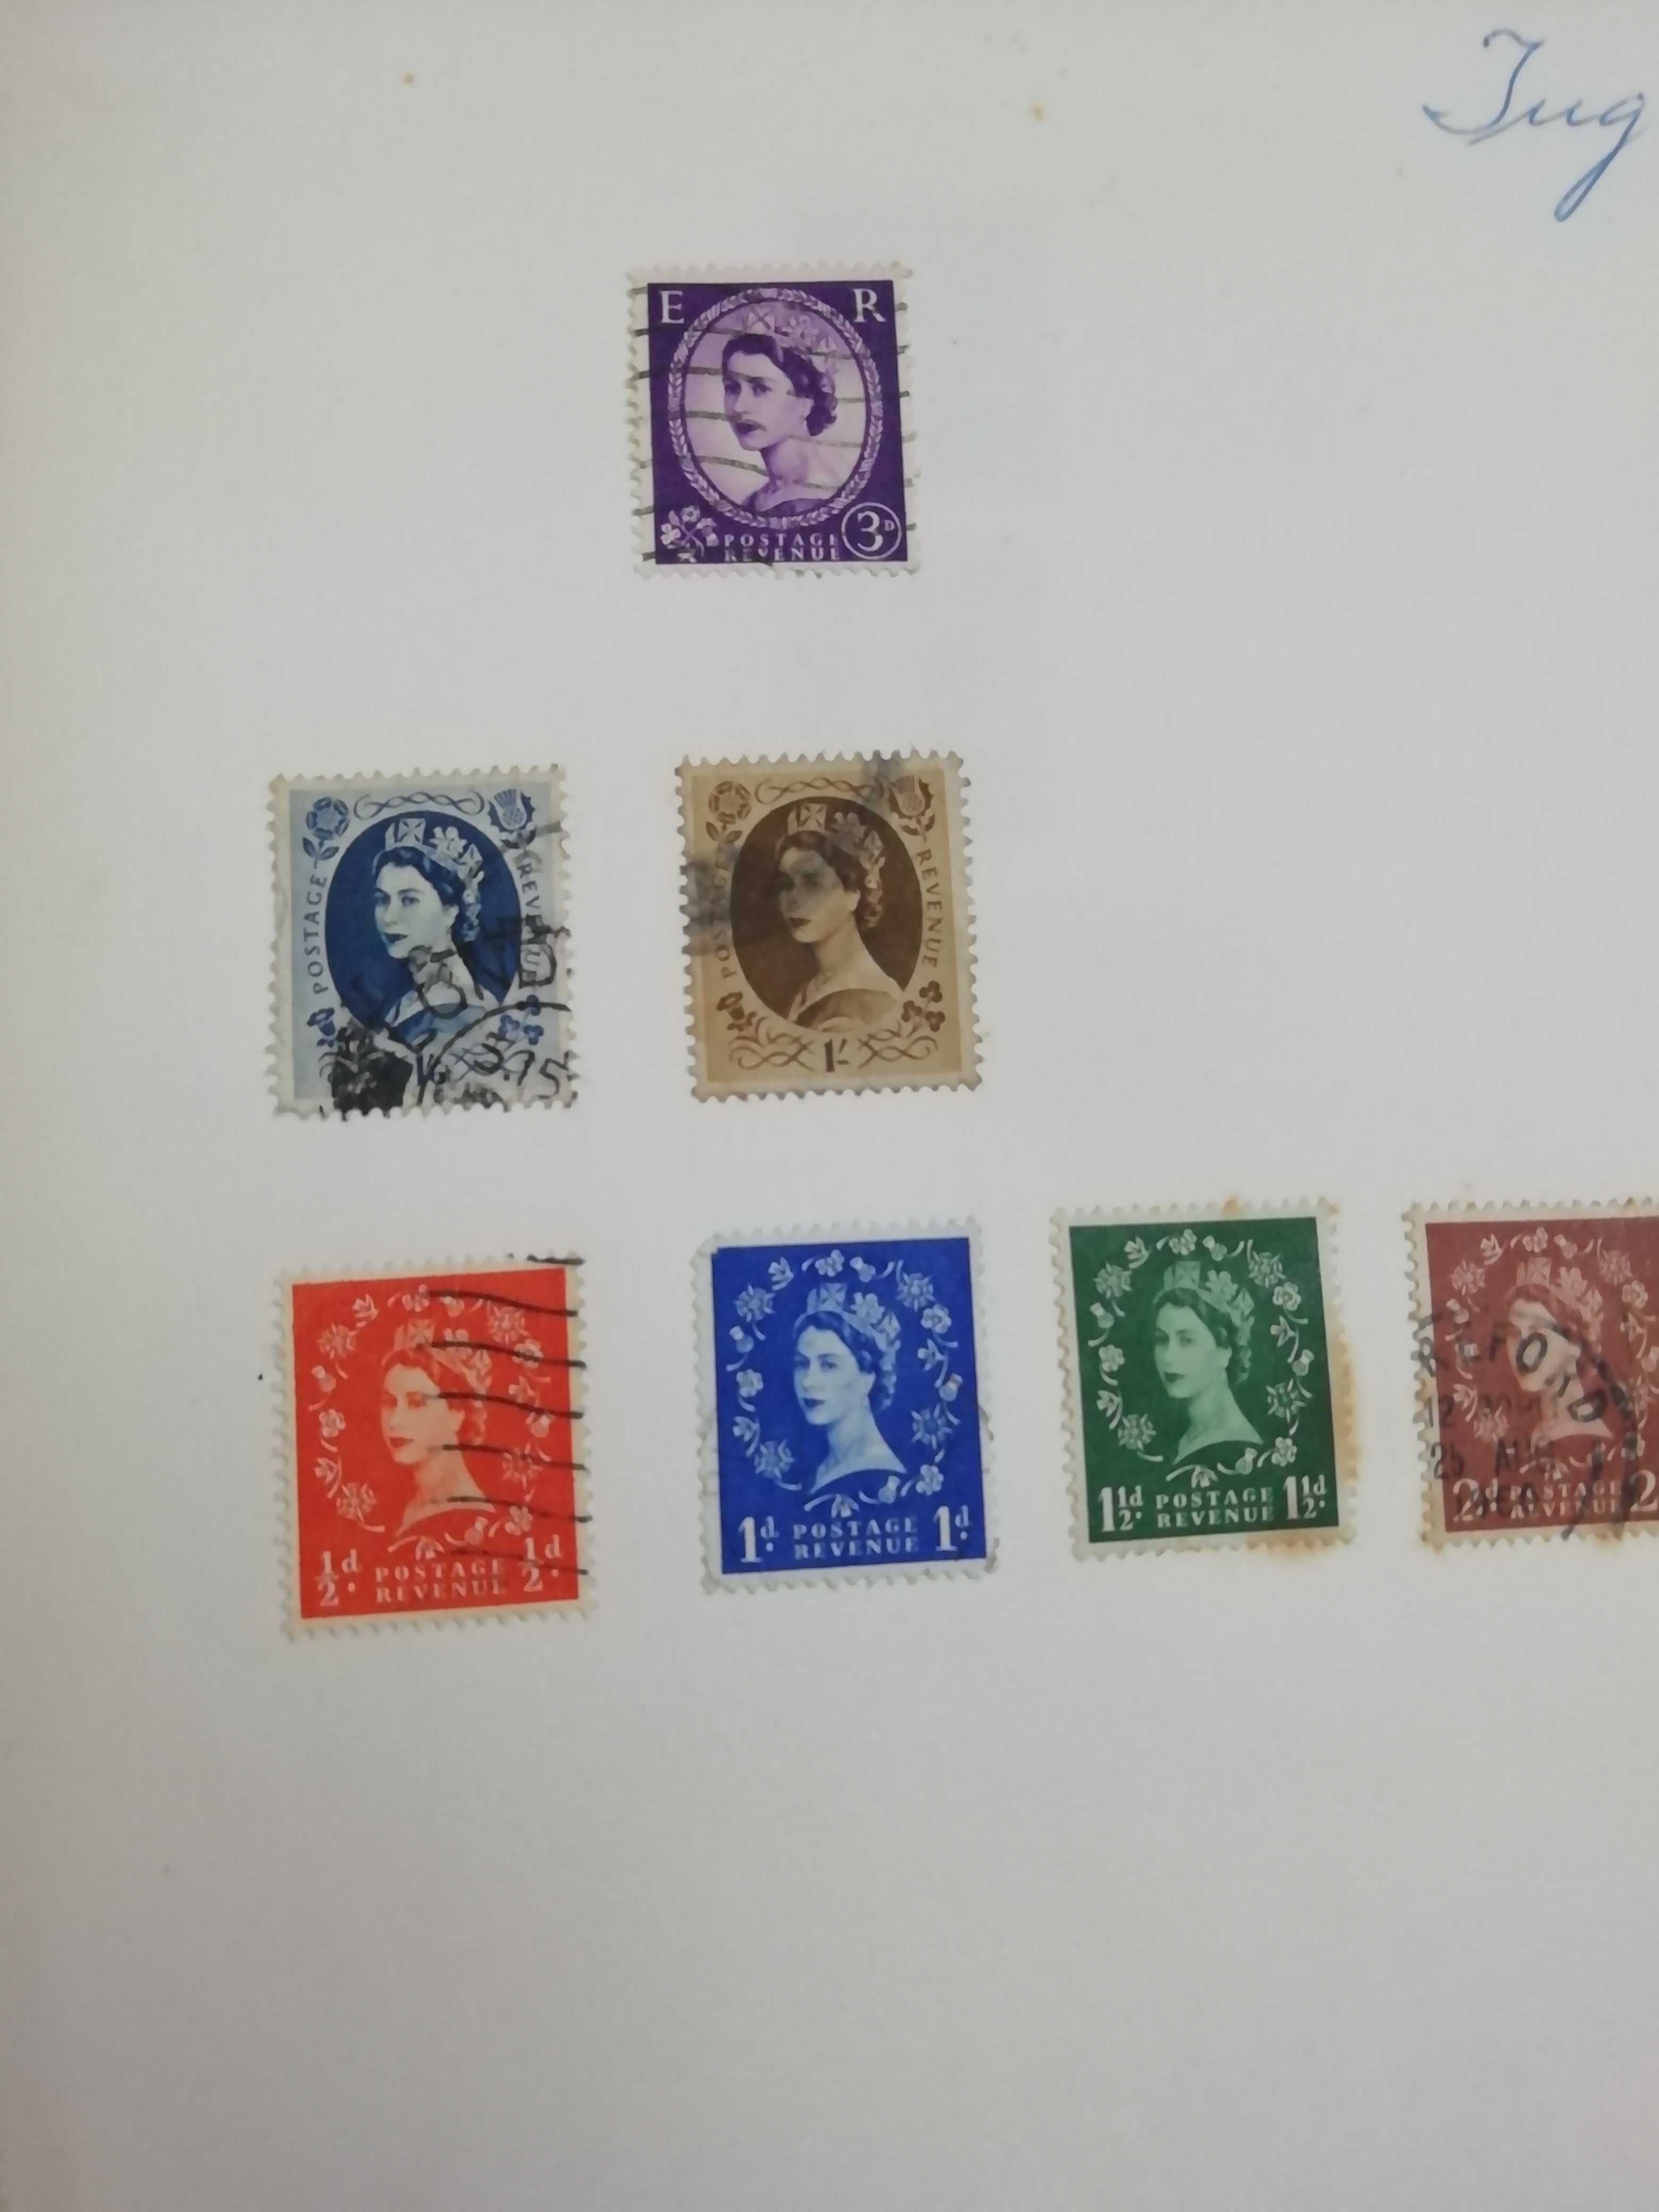 Álbuns e caixas de selos